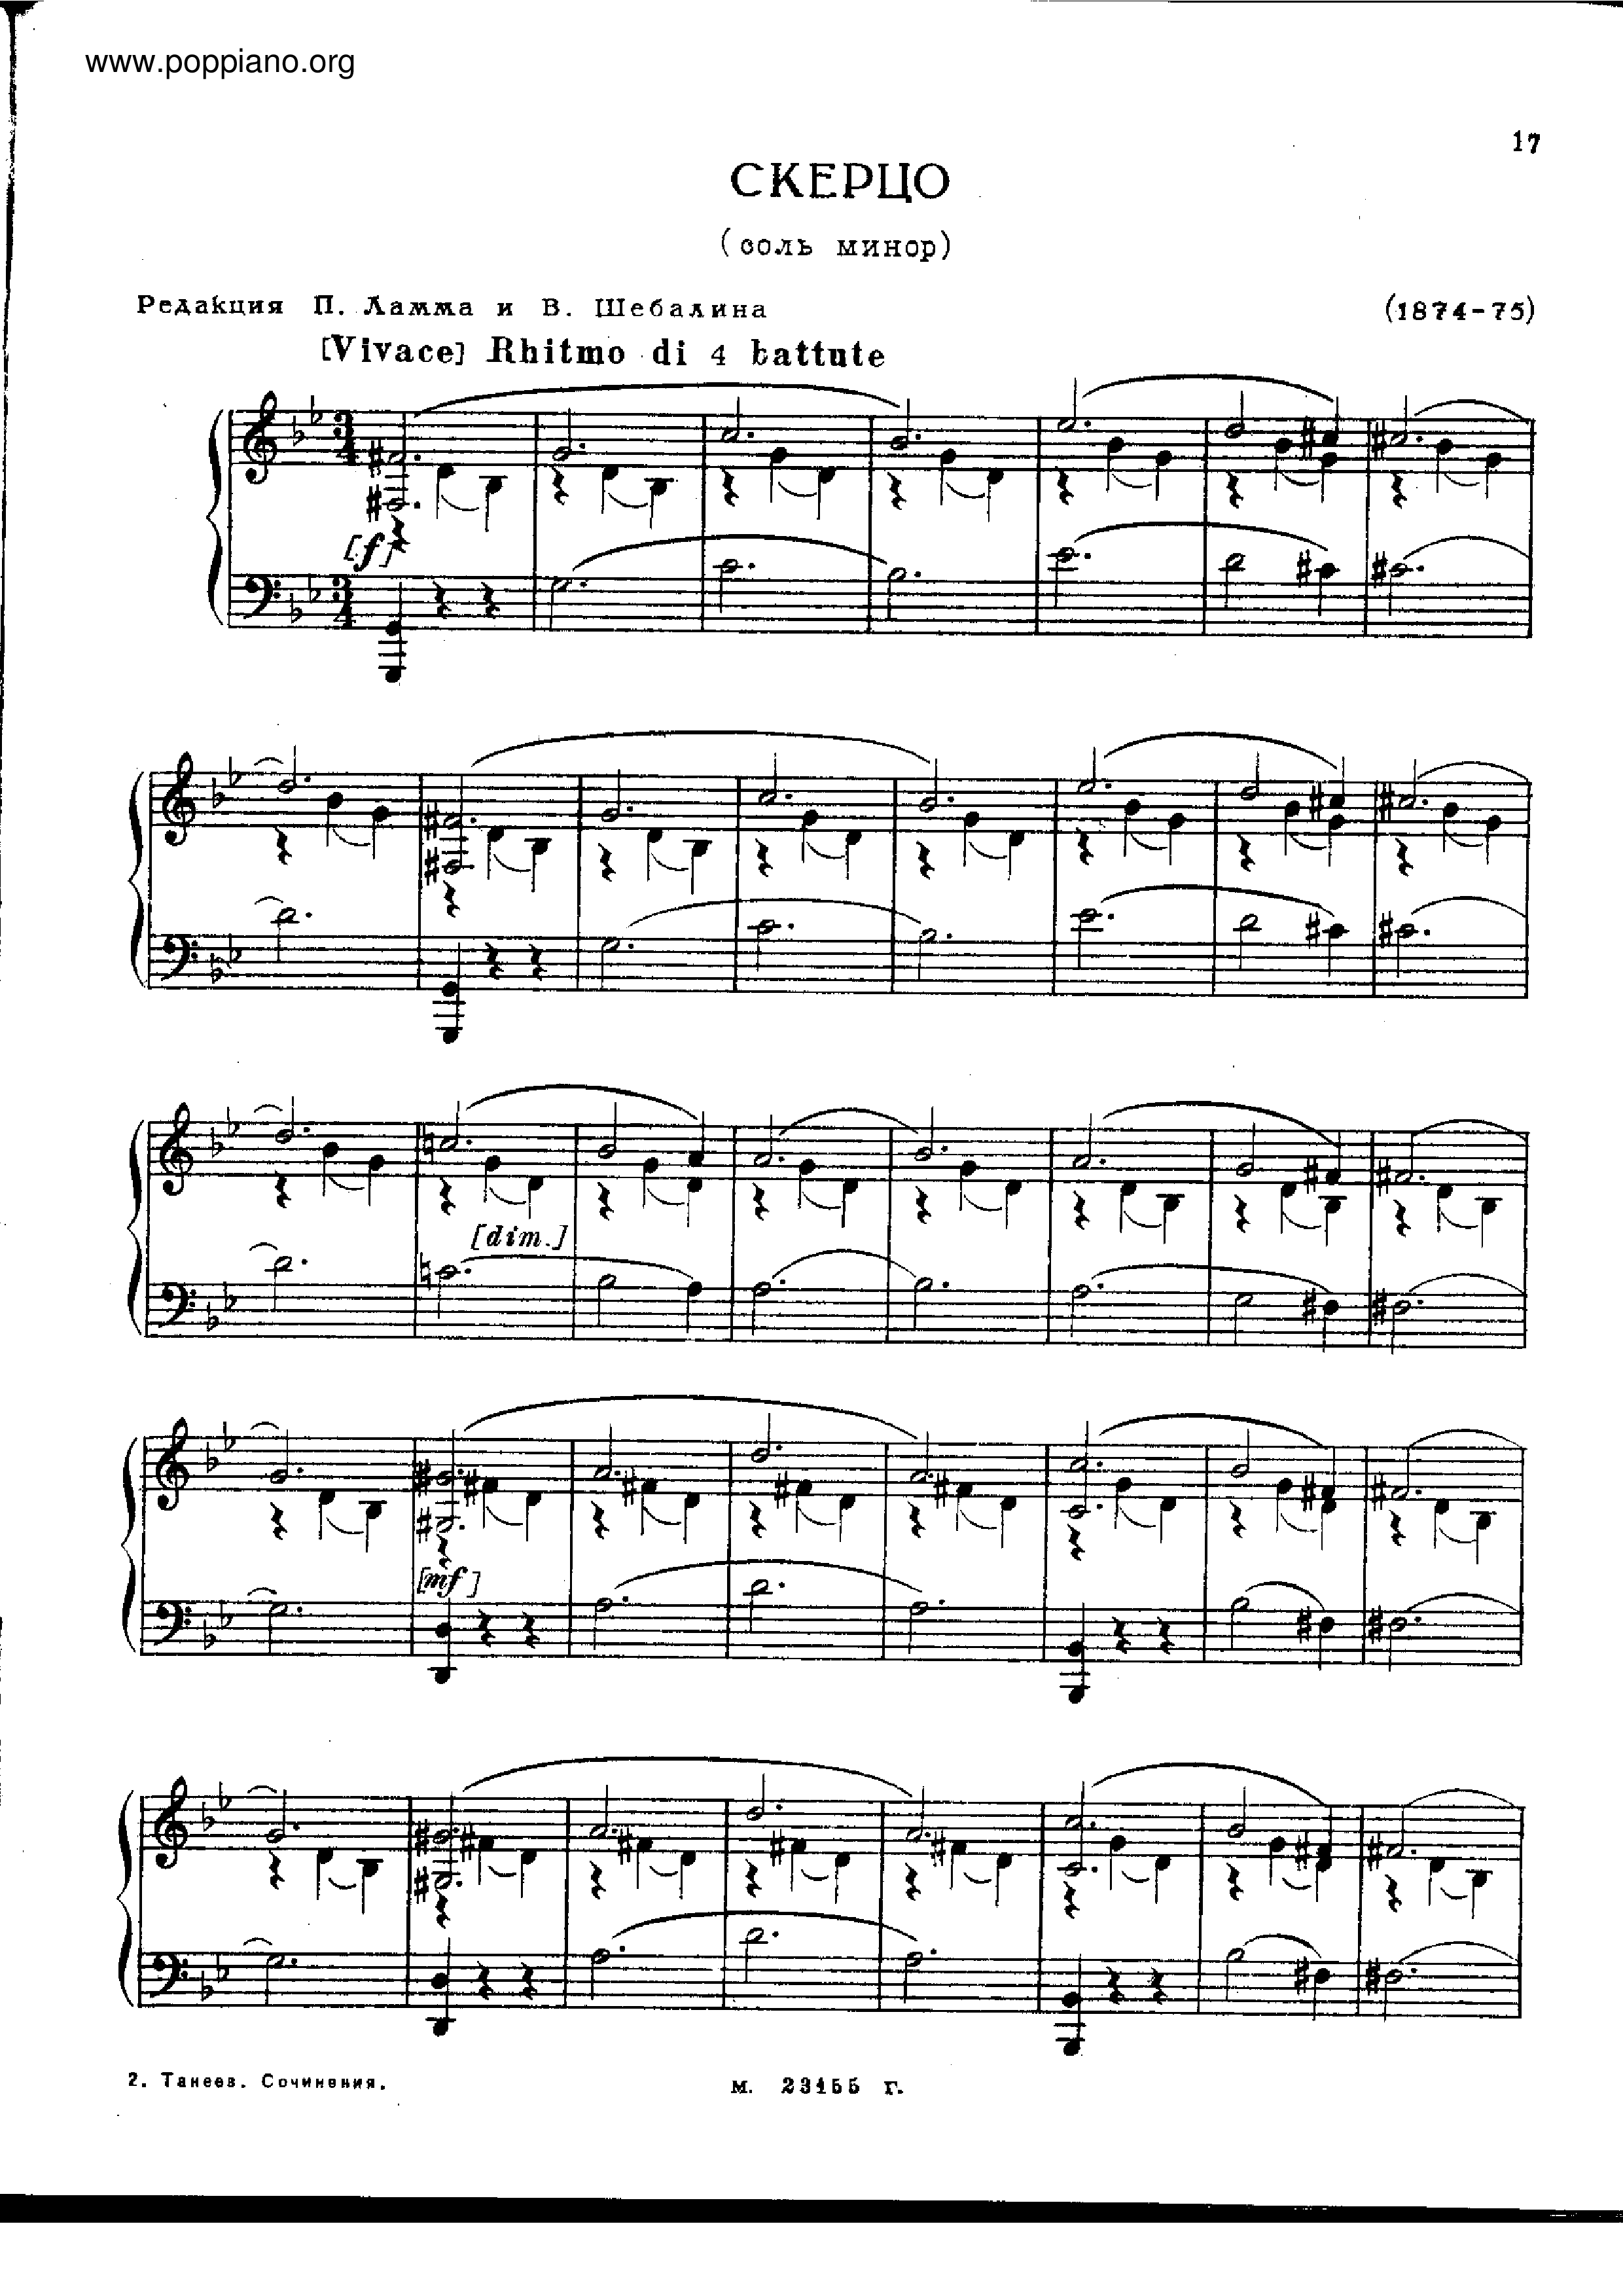 No.3 in G minor琴谱